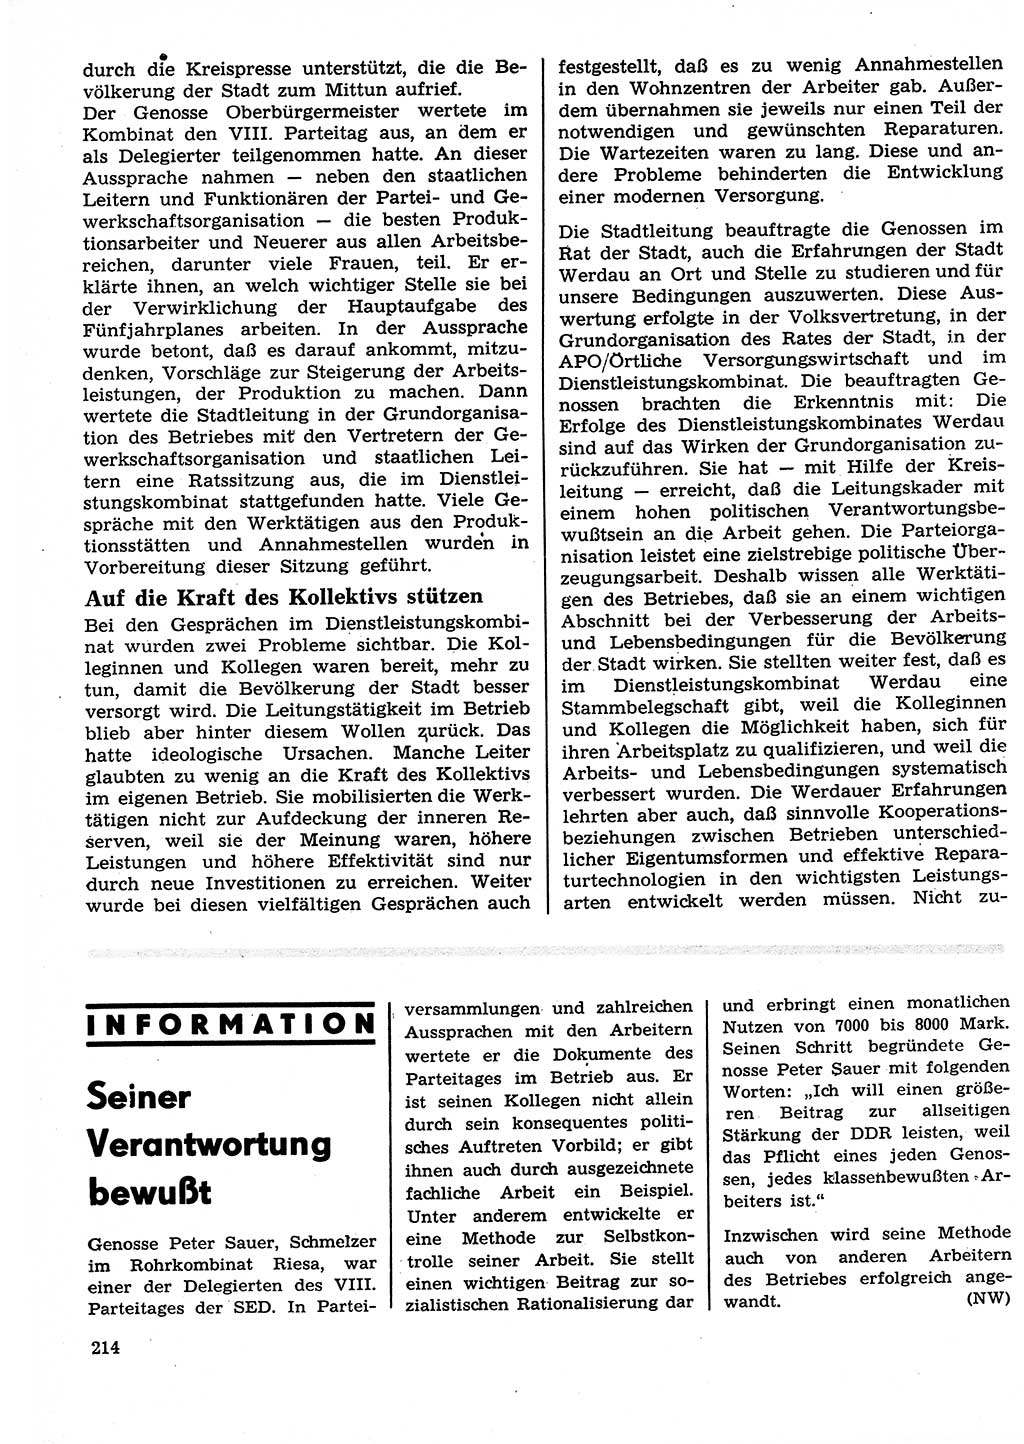 Neuer Weg (NW), Organ des Zentralkomitees (ZK) der SED (Sozialistische Einheitspartei Deutschlands) für Fragen des Parteilebens, 27. Jahrgang [Deutsche Demokratische Republik (DDR)] 1972, Seite 214 (NW ZK SED DDR 1972, S. 214)